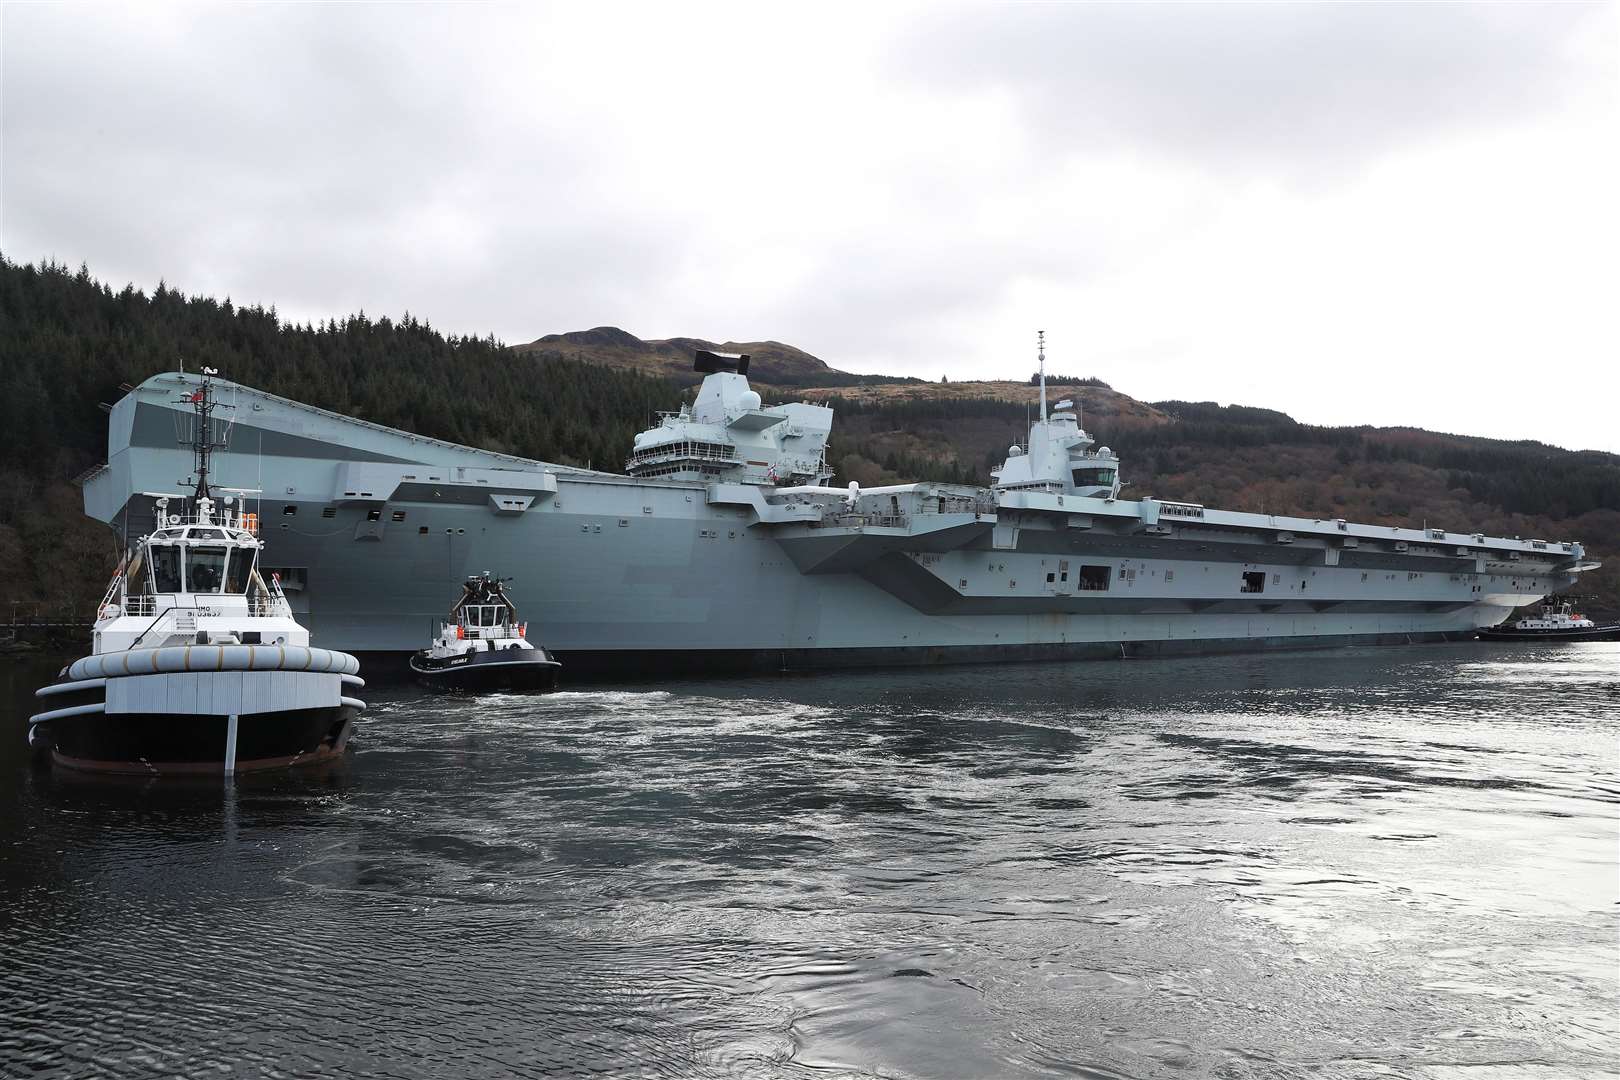 HMS Queen Elizabeth during her recent visit to Glen Mallan.